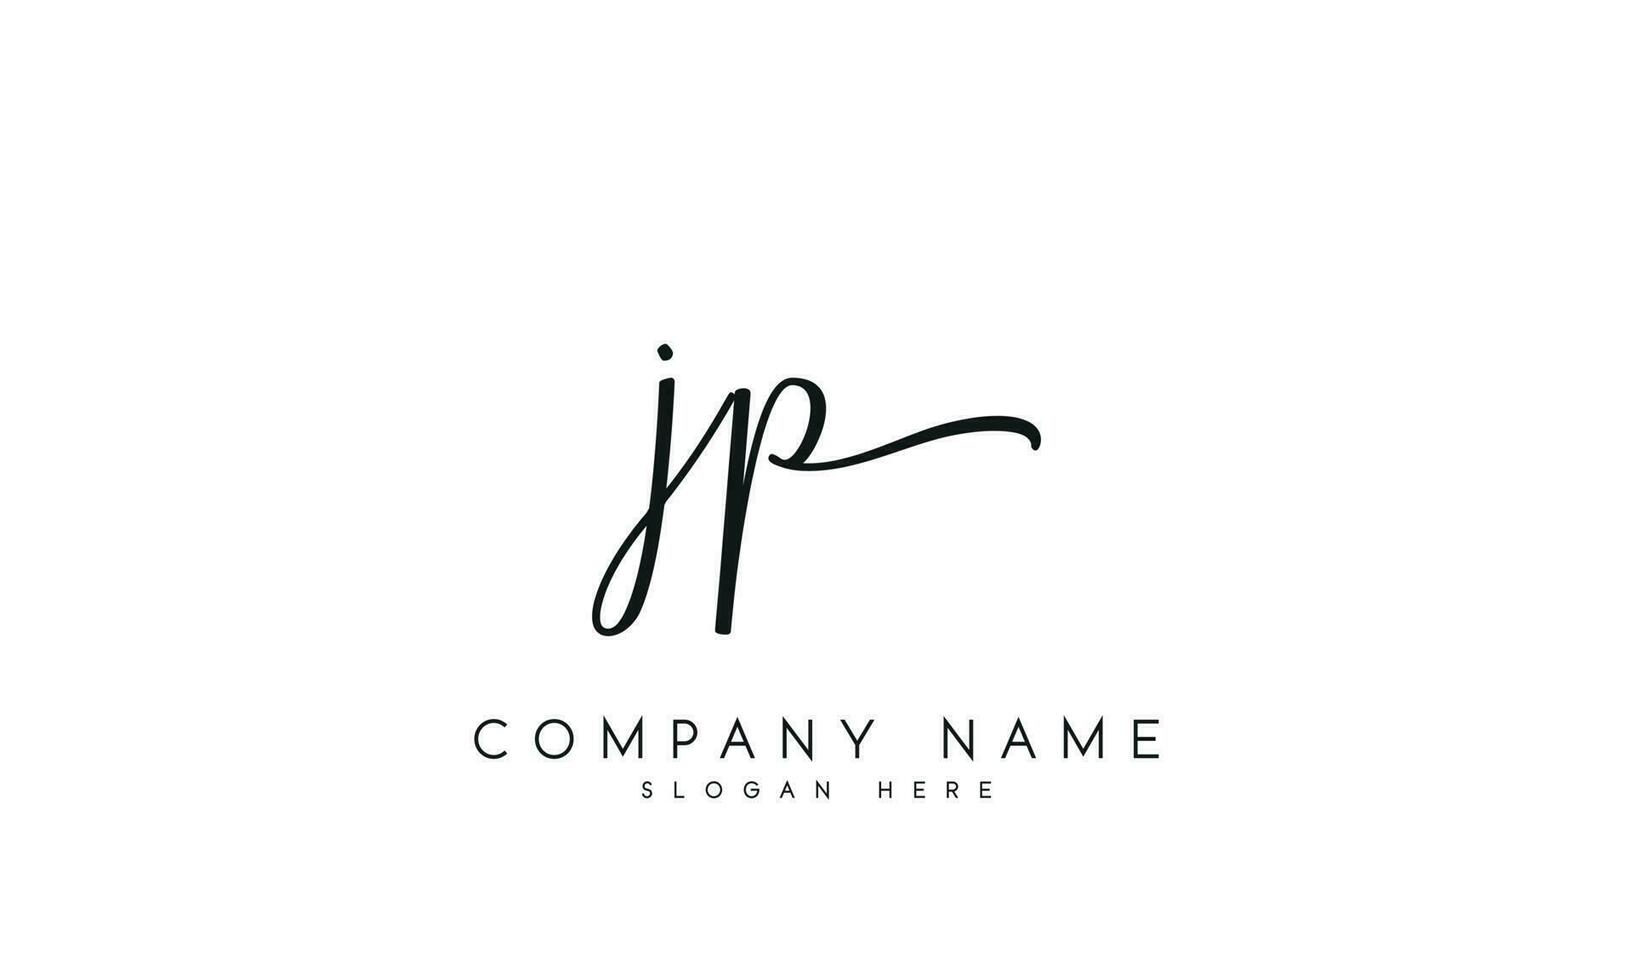 Handwriting JP logo design. JP logo design vector illustration on white background. free vector